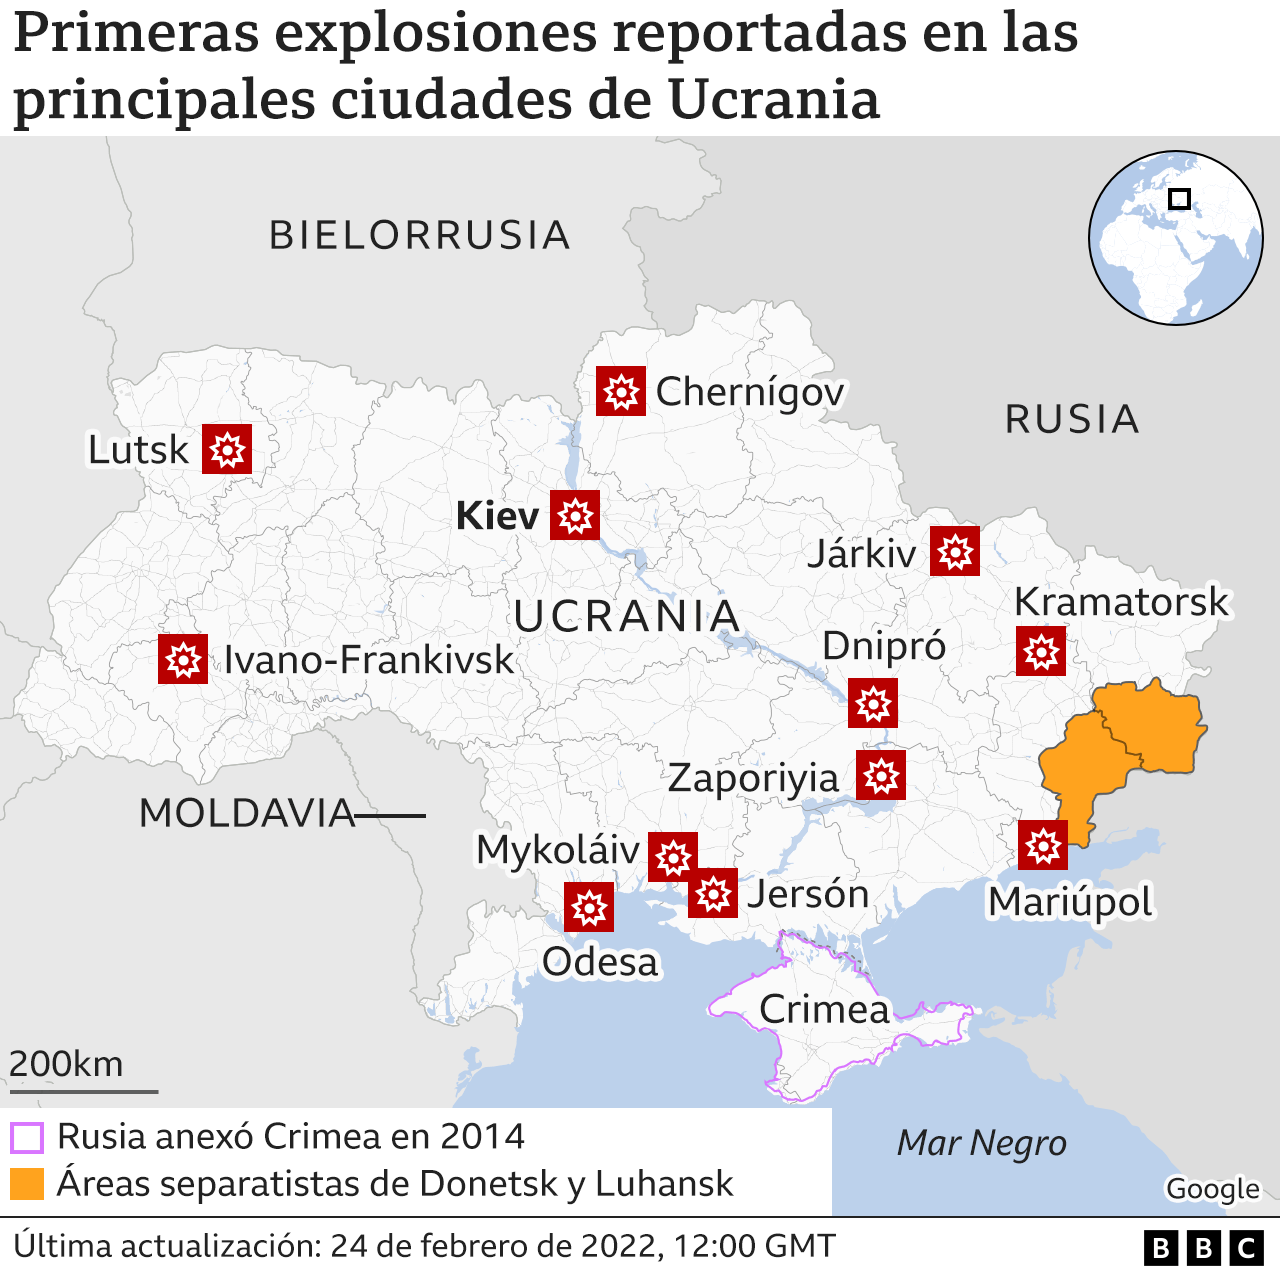 Mapa de las ciudades donde se reportaron las primeras explosiones